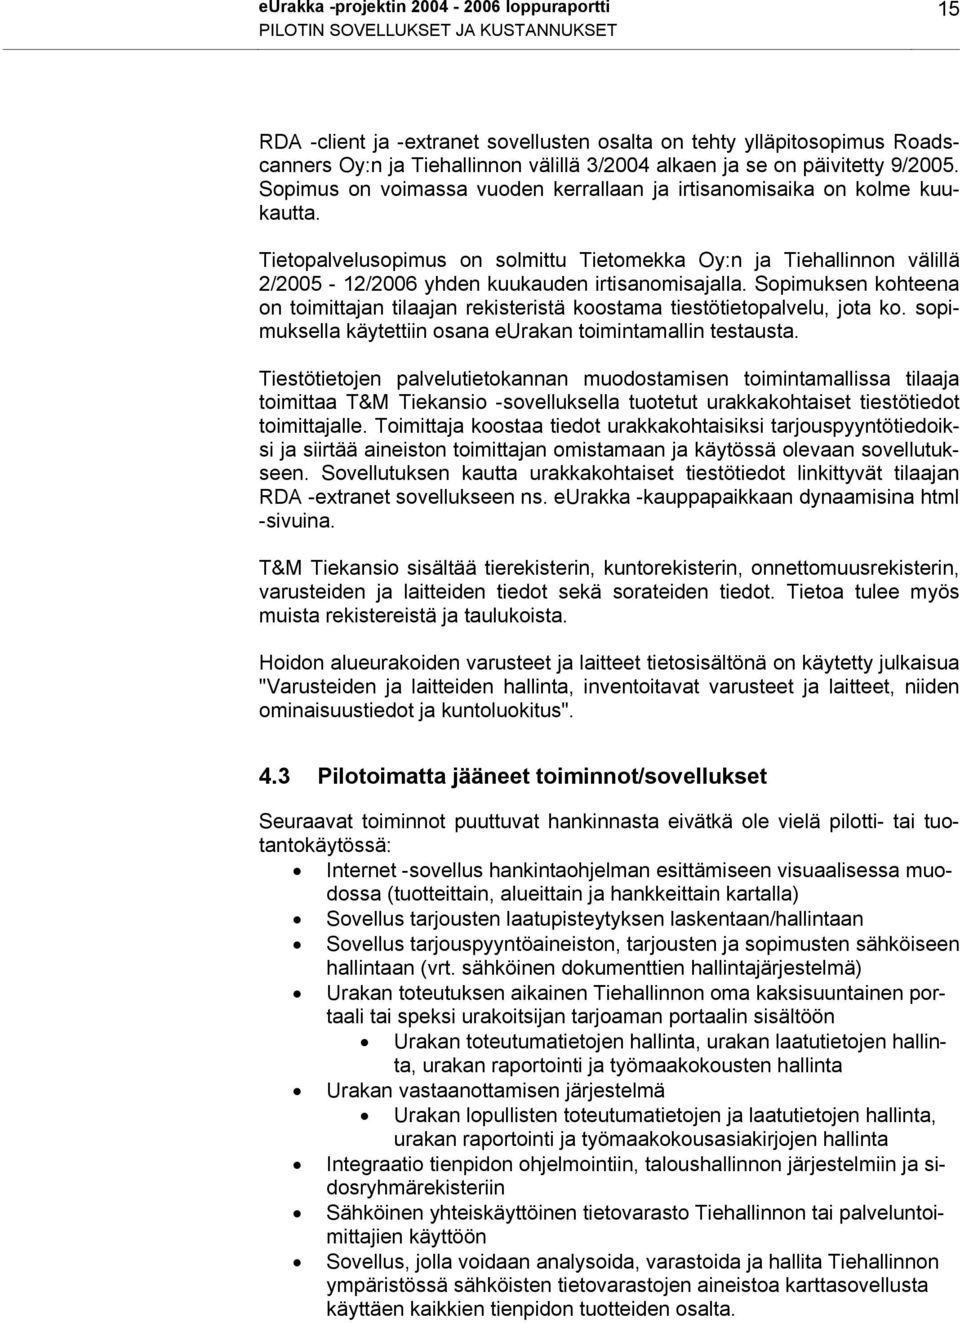 Tietopalvelusopimus on solmittu Tietomekka Oy:n ja Tiehallinnon välillä 2/2005-12/2006 yhden kuukauden irtisanomisajalla.